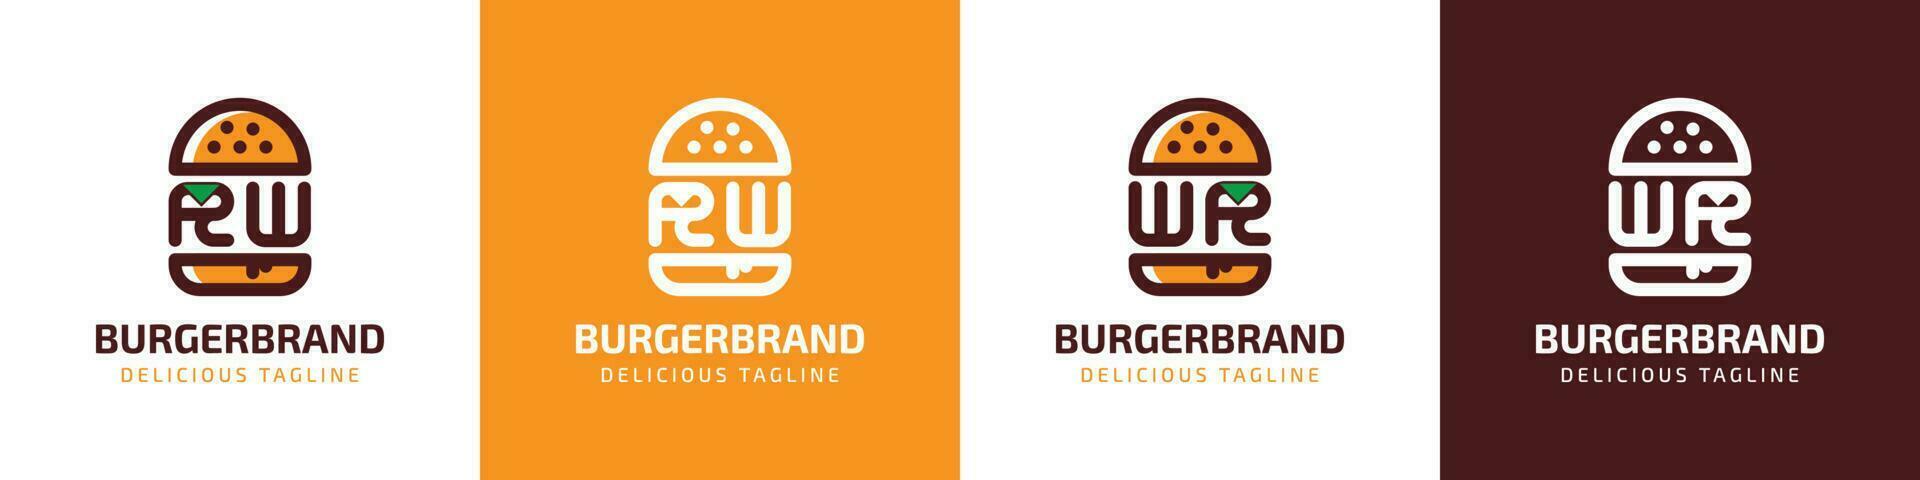 lettre rw et wr Burger logo, adapté pour tout affaires en relation à Burger avec rw ou wr initiales. vecteur